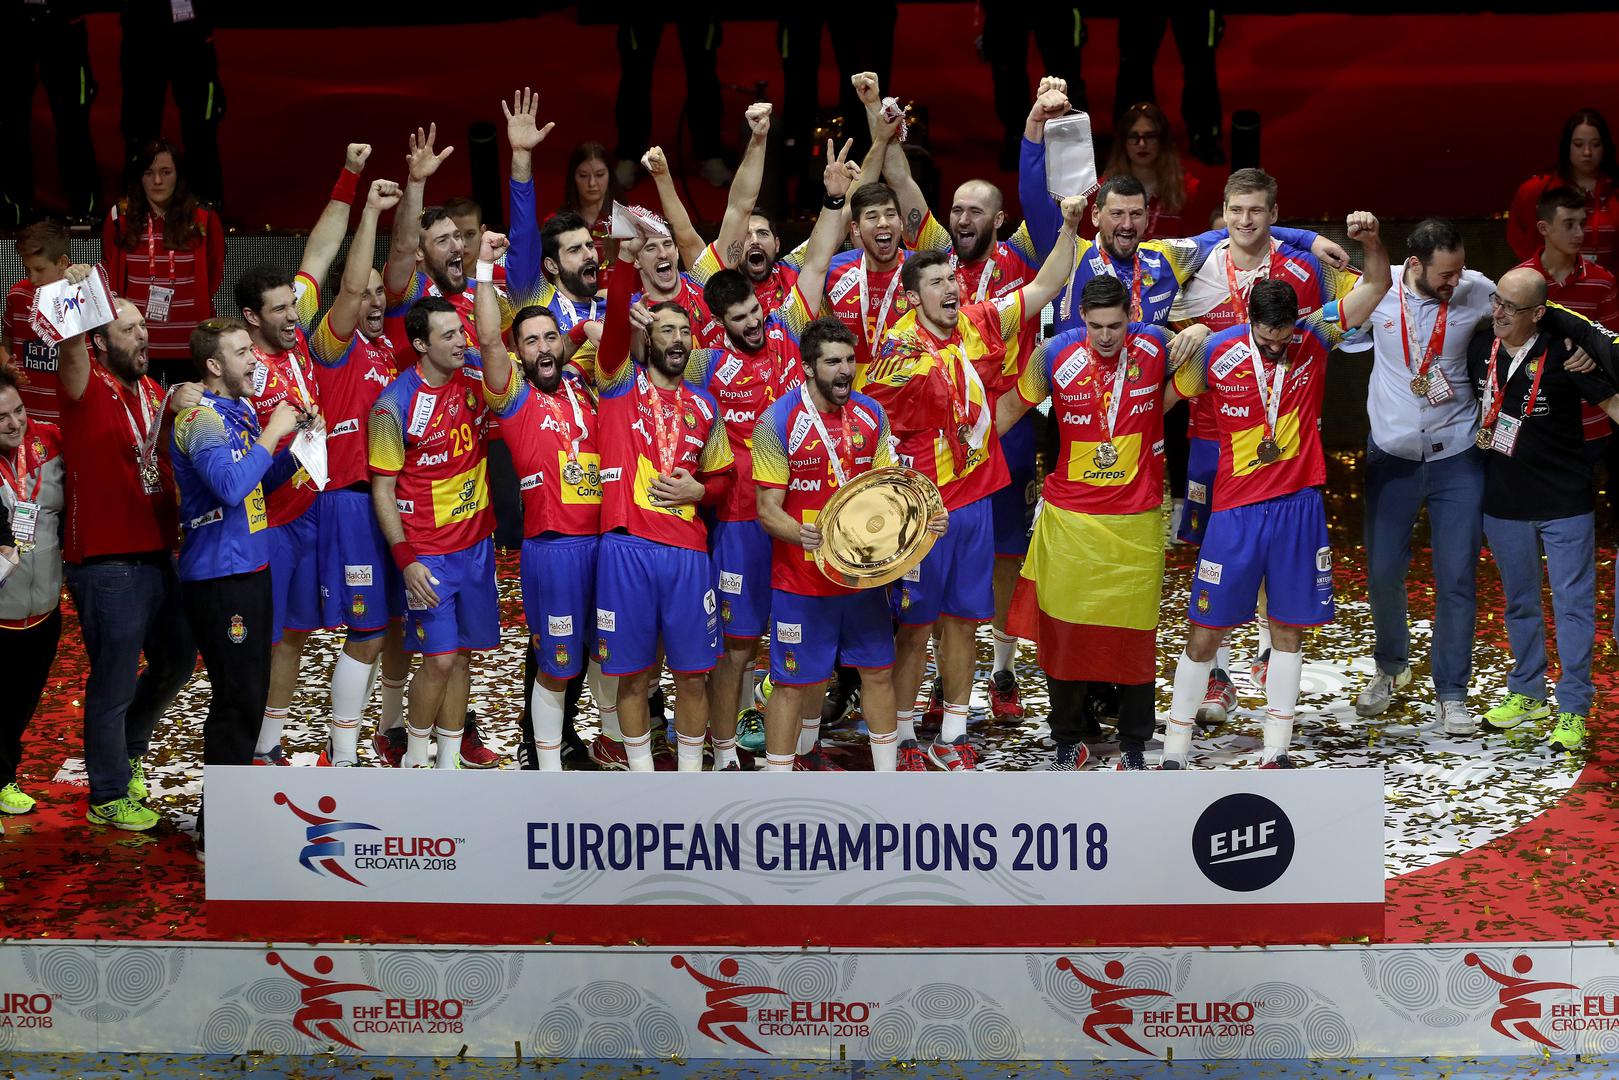 Rukometaši Španjolske osvojili su naslov europskih prvaka nakon što su u finalu u zagrebačkoj Areni svladali Švedsku sa 29:23